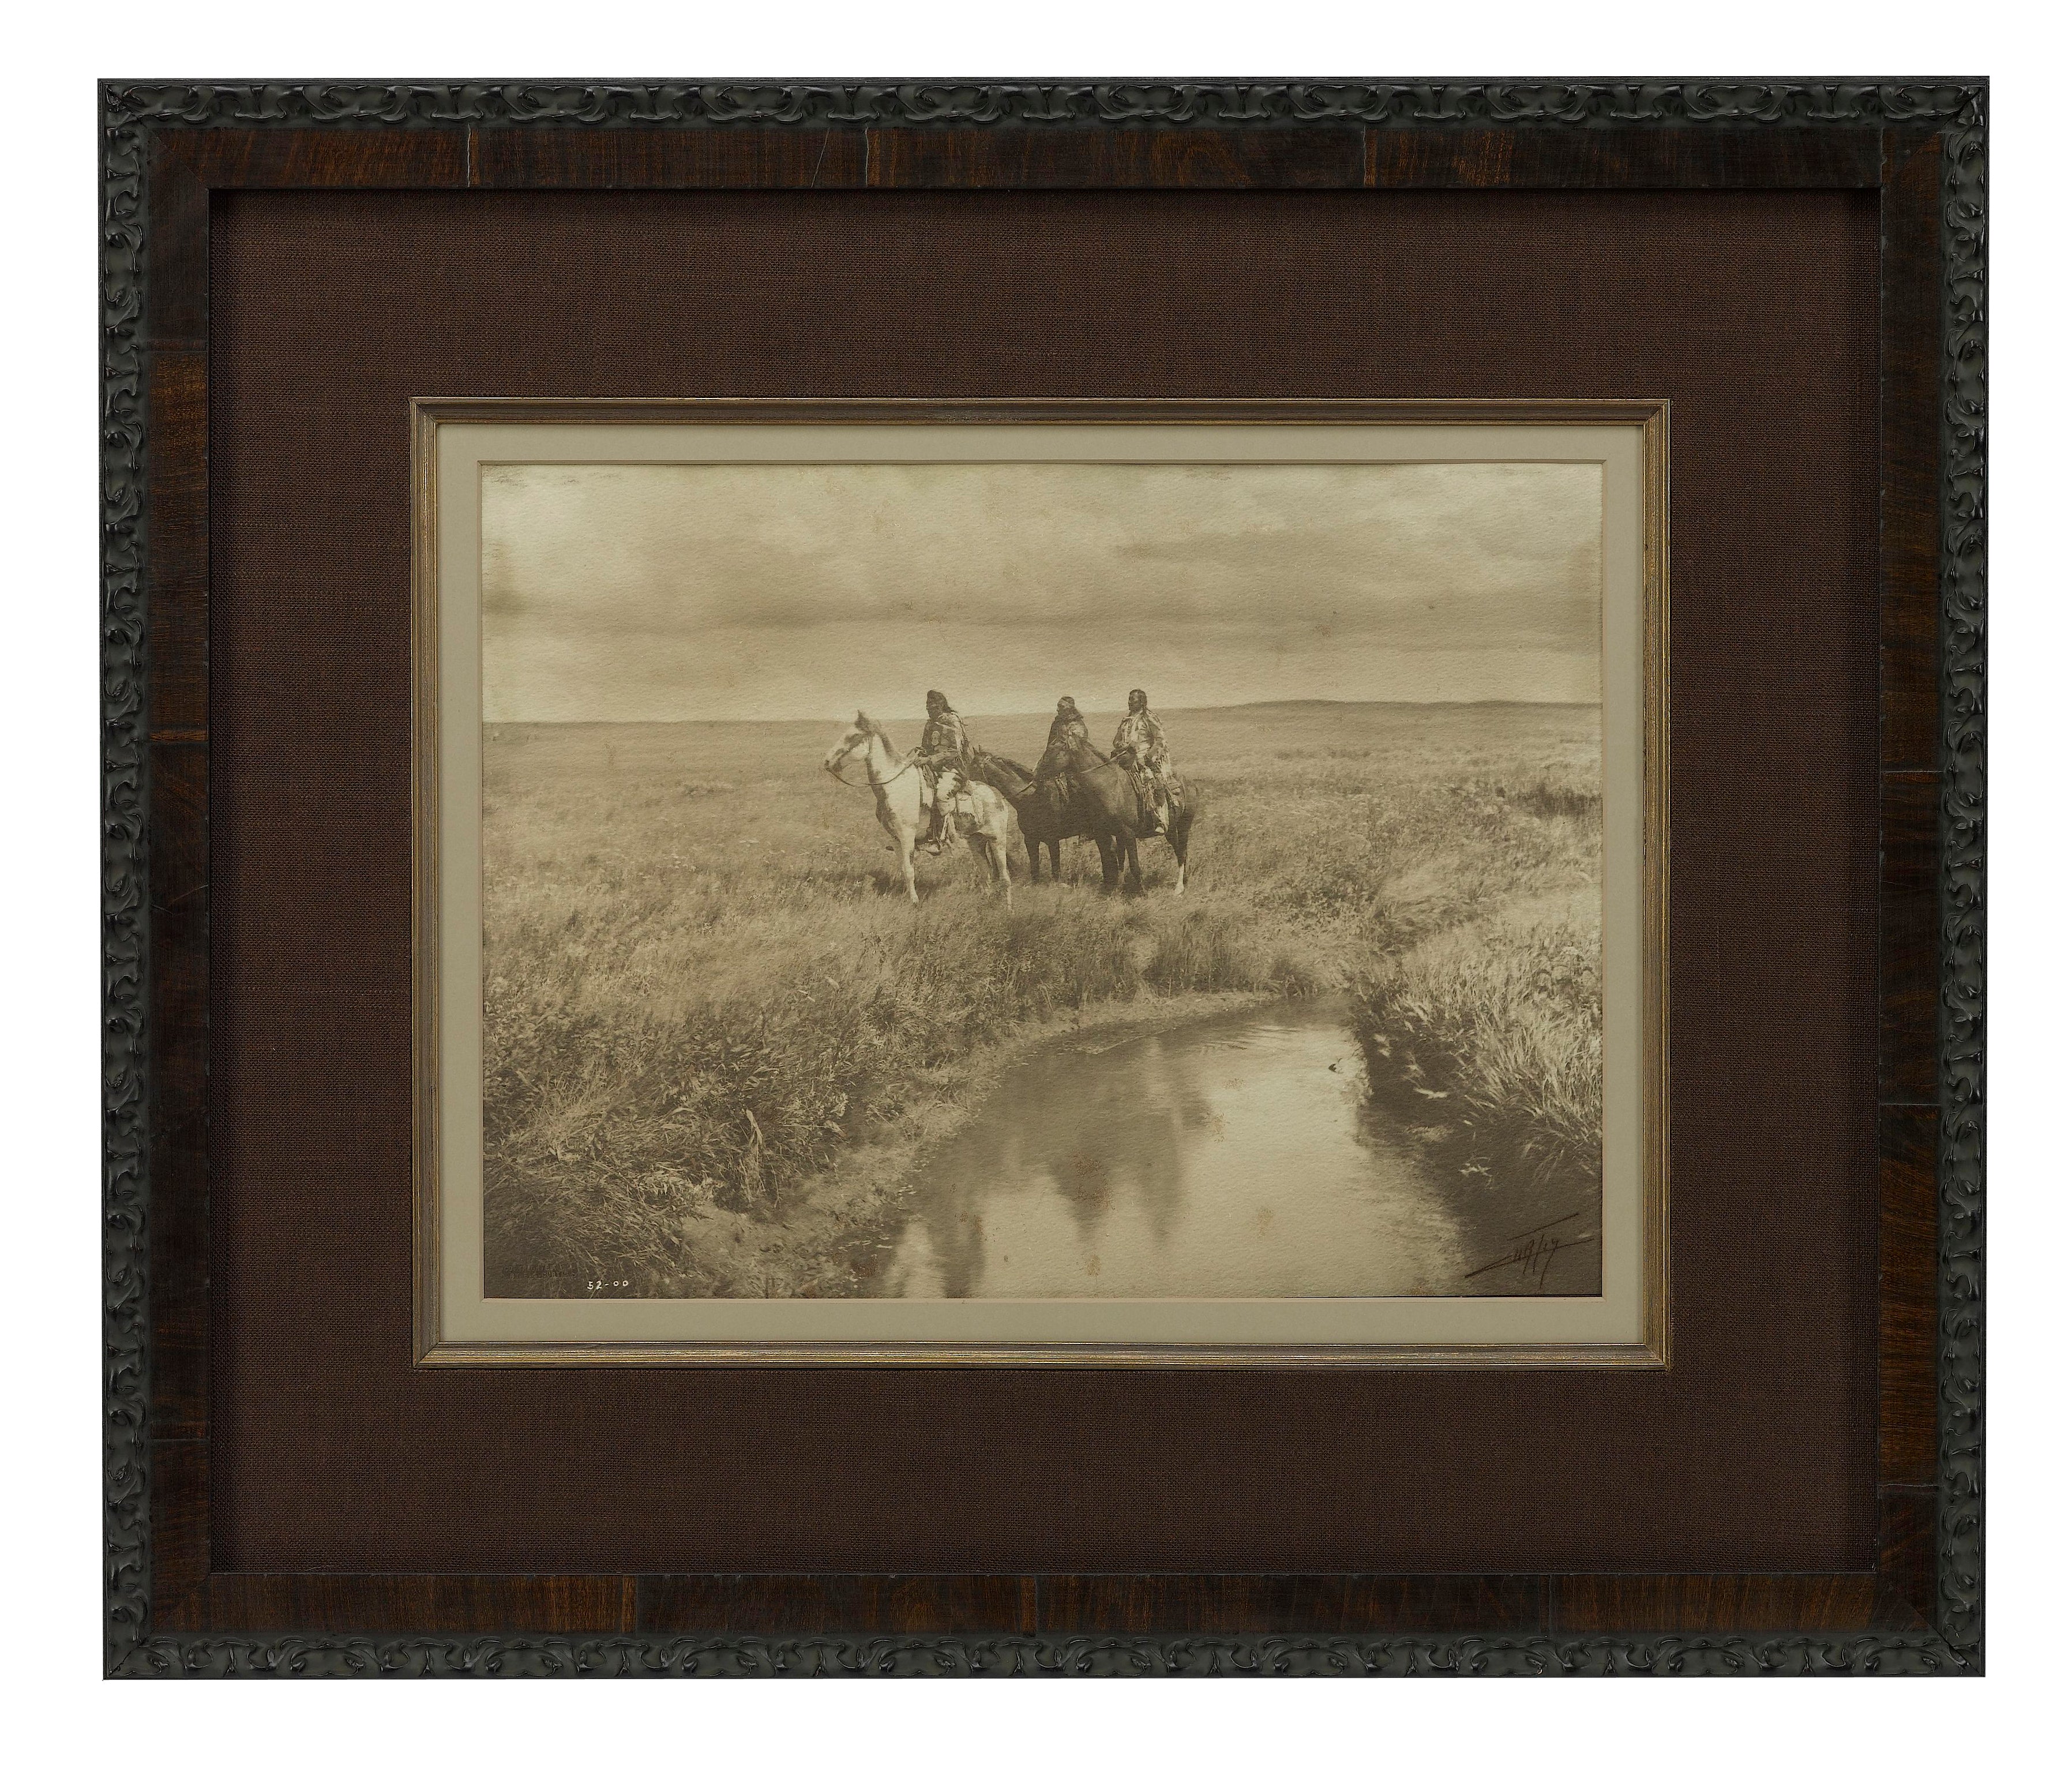 The Three Chiefs: A Rare Platinum Photograph